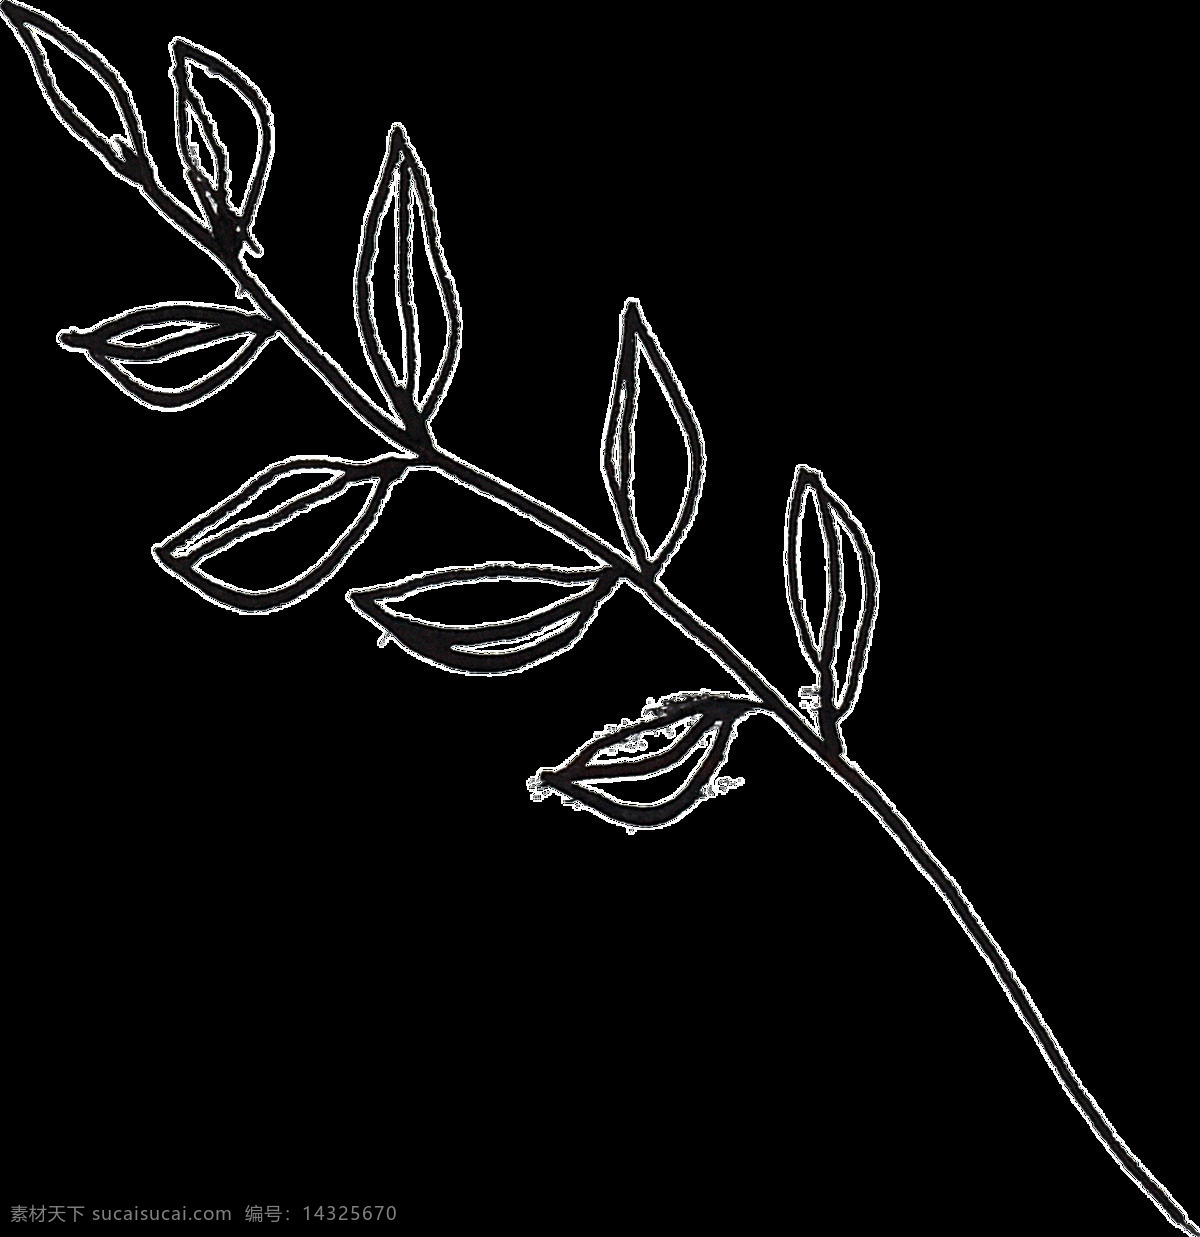 线条 描绘 植物 卡通 透明 抠图专用 装饰 设计素材